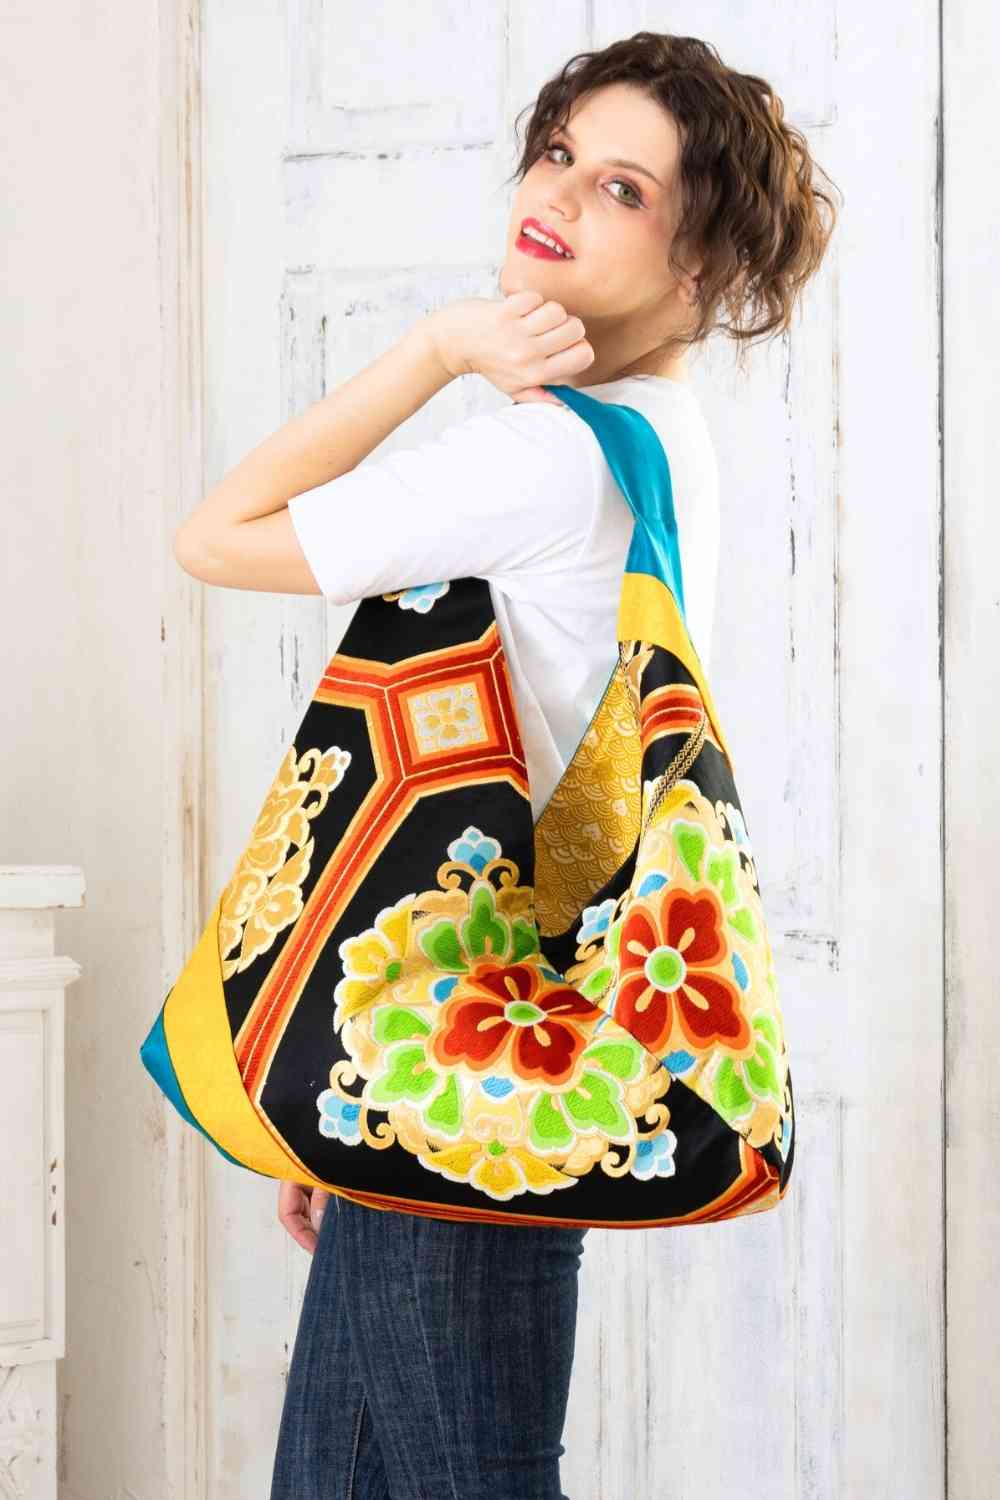 Aliso Bay | Shop | Boho chic bags, Boho style bag, Bohemian bags